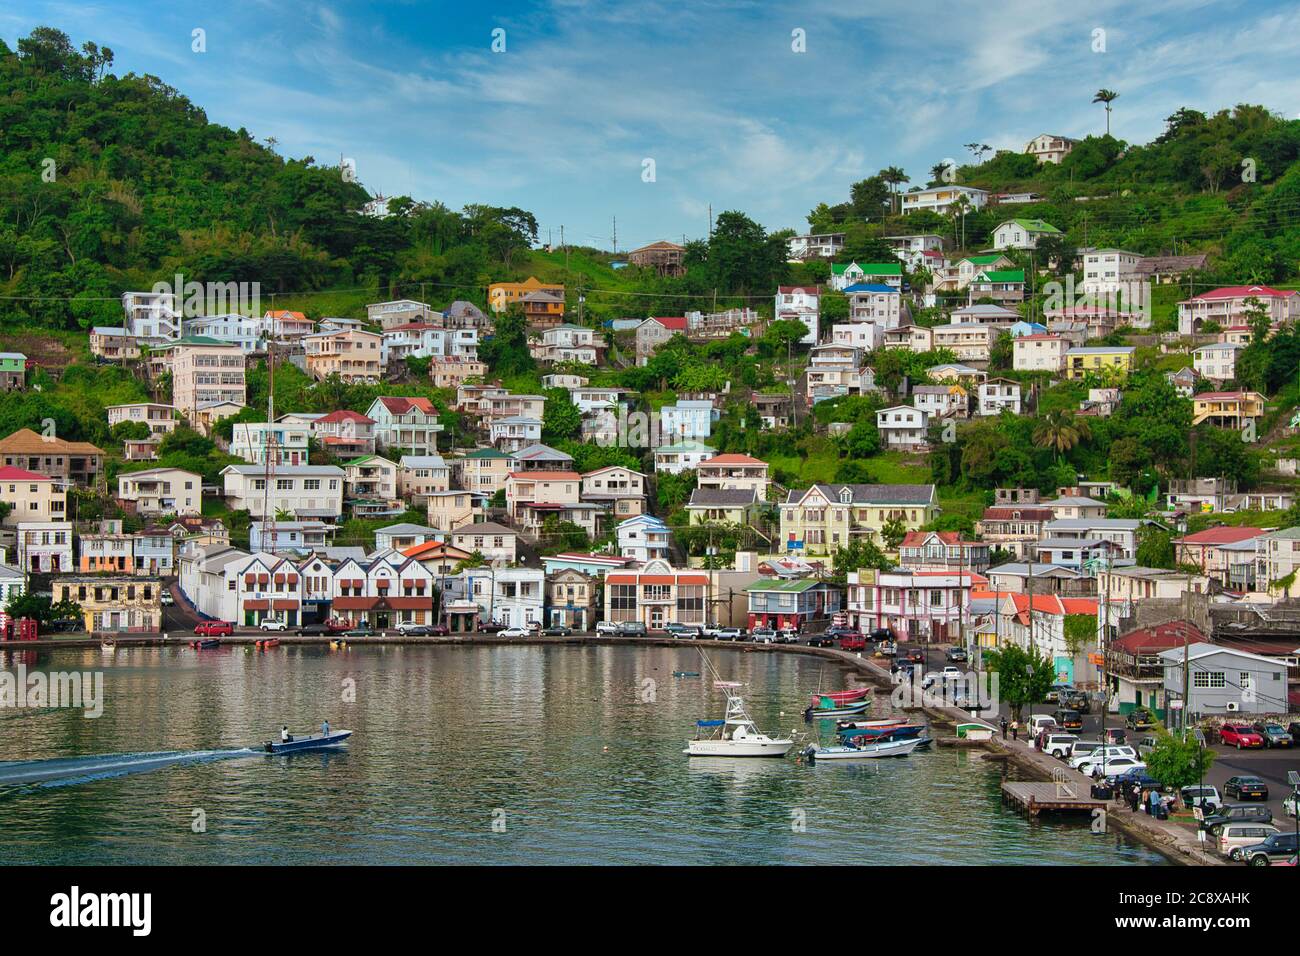 Affacciato sul porto e sul lungomare di St George's con piccole barche ormeggiate e case sulle colline oltre, Grenada isola, Caraibi Foto Stock